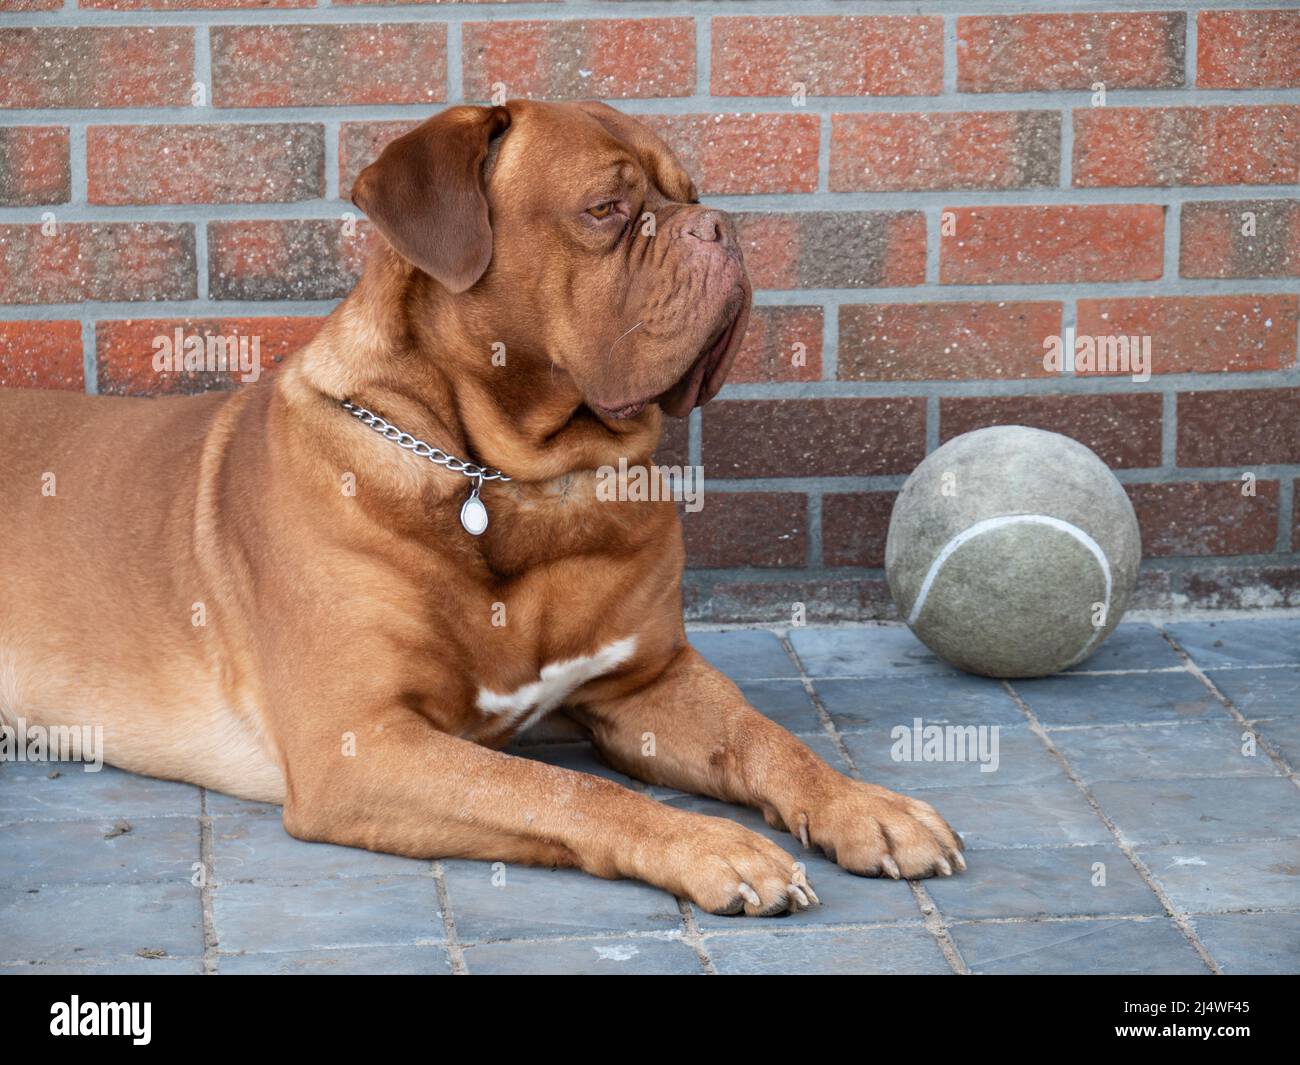 Cane molto grande il mascrito francese sta riposando in un cortile con una palla di calcio accanto a lui Foto Stock